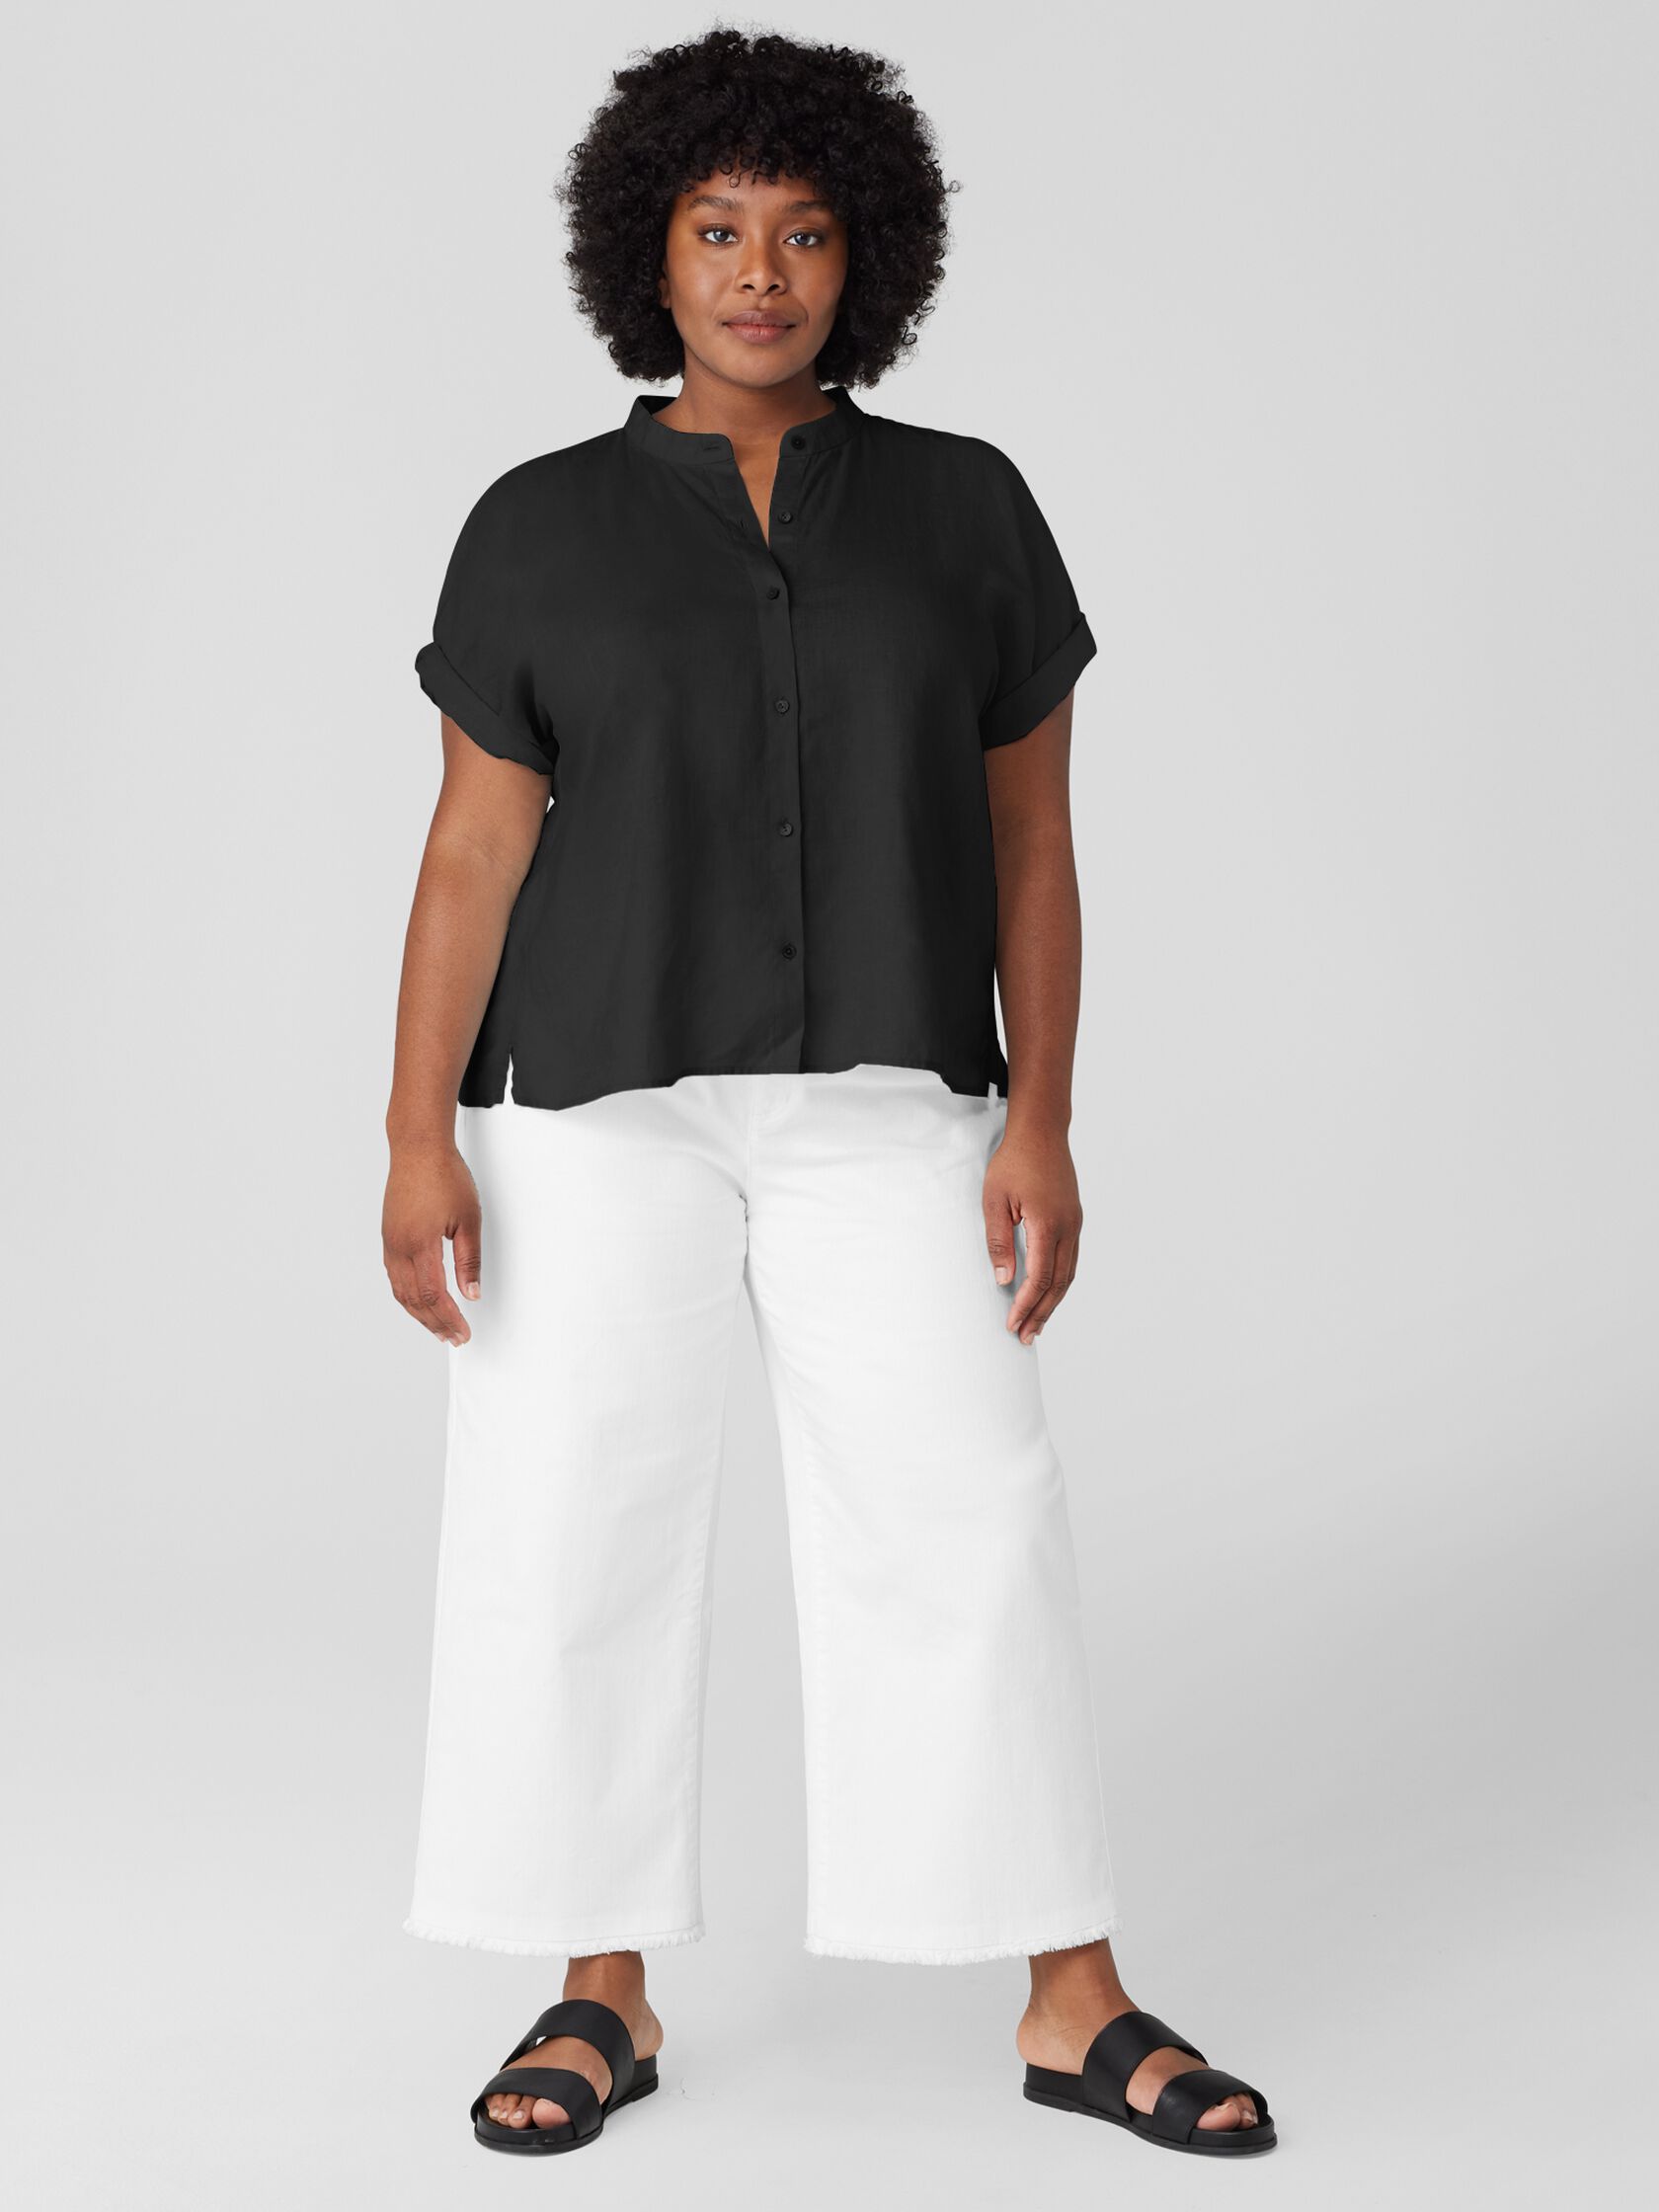 Handkerchief Linen Short-Sleeve Shirt